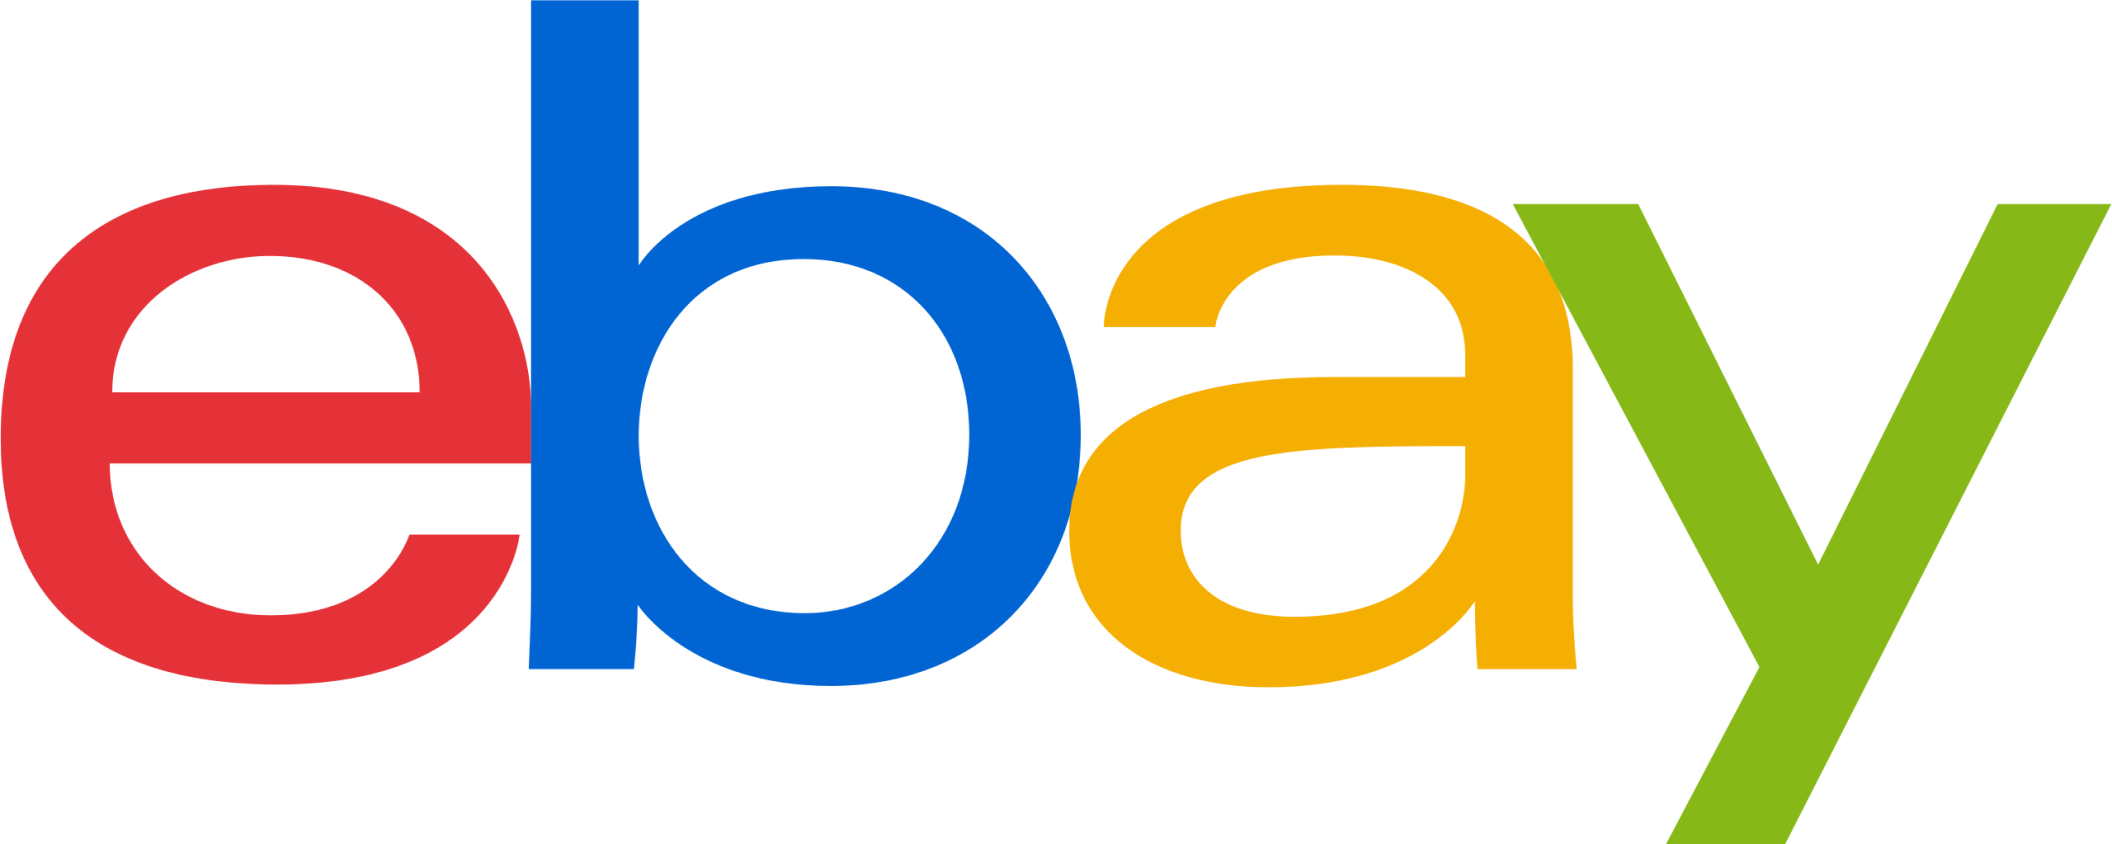 2560px-EBay_logo 1